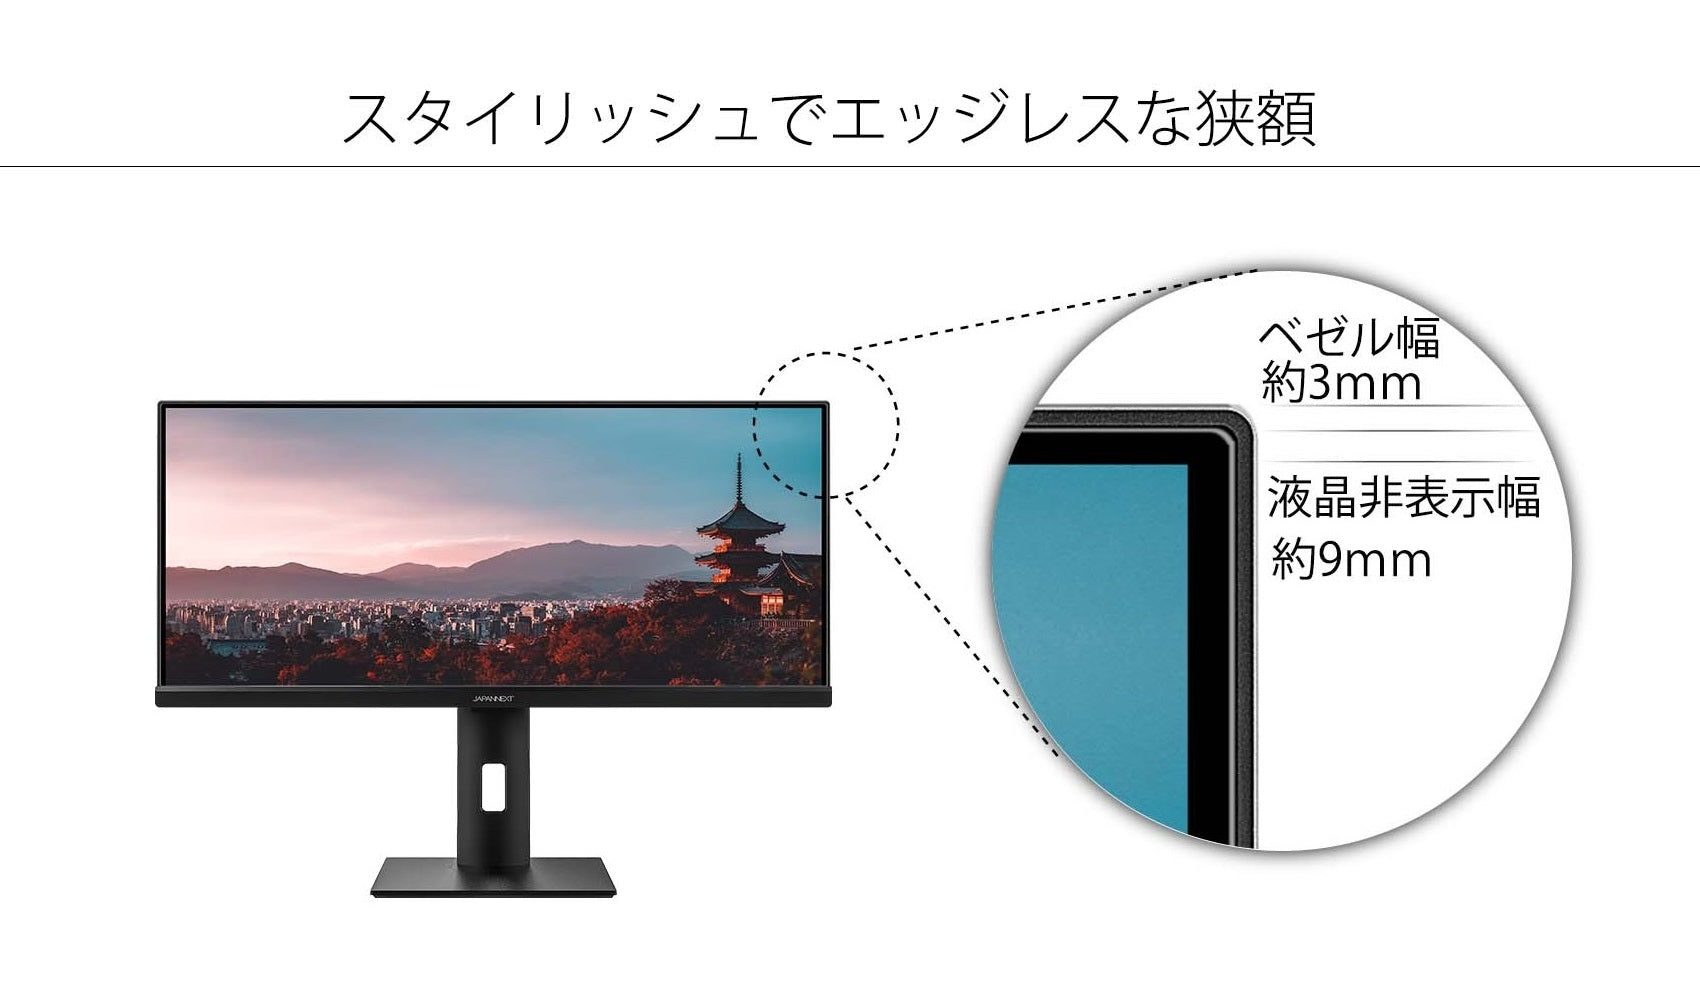 JAPANNEXT 29インチ ワイドFHD(2560 x 1080) 液晶モニター JN